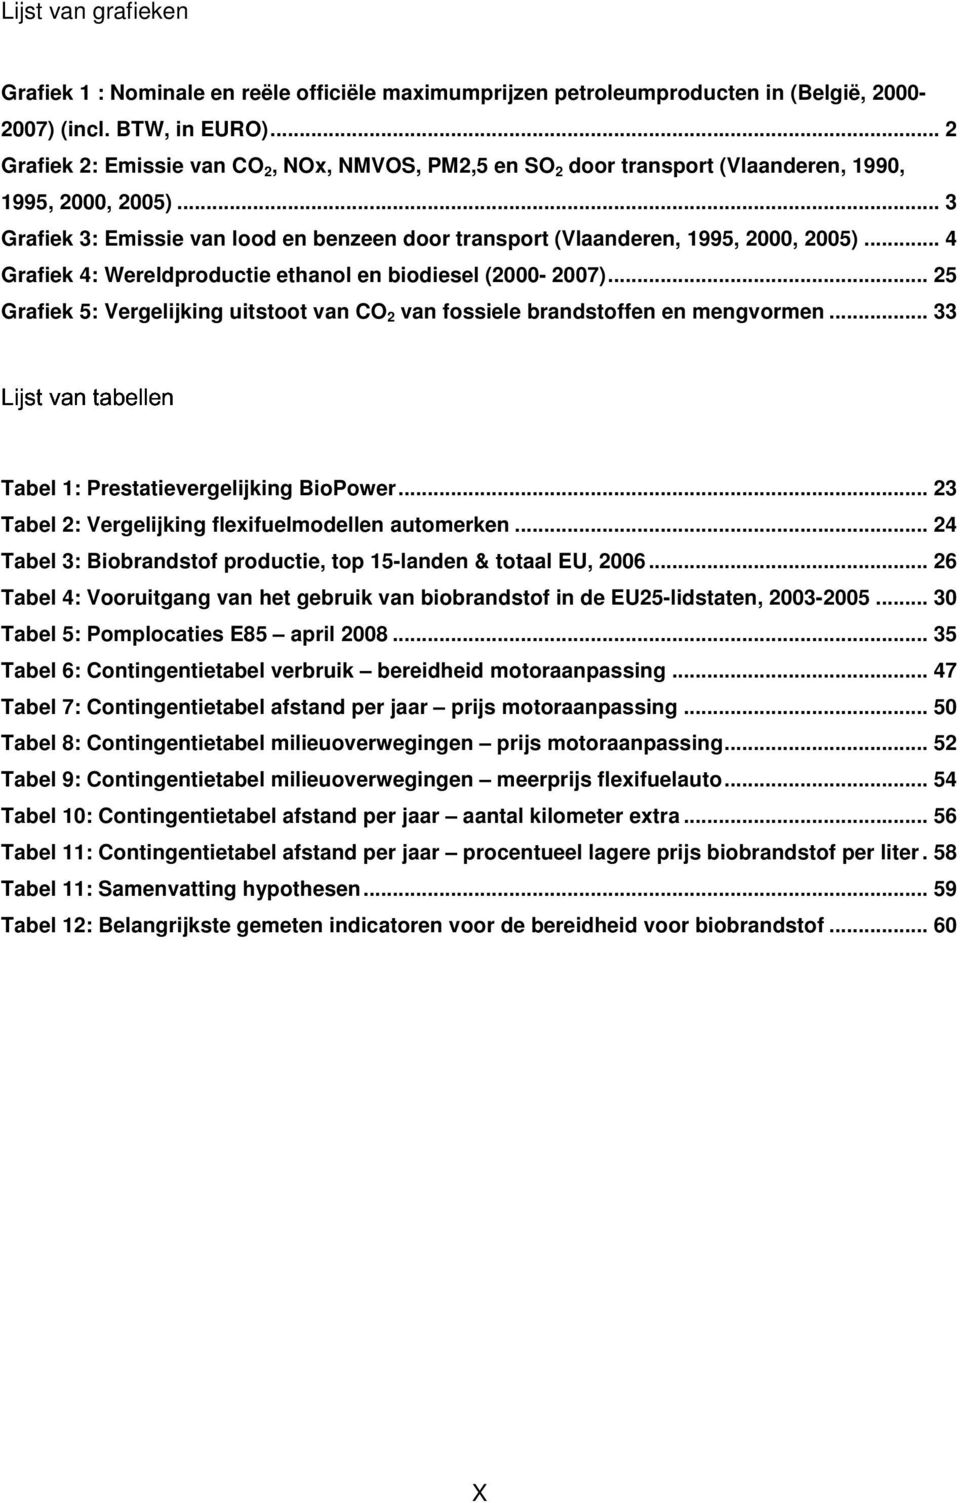 .. 3 Lijst van tabellen Grafiek 3: Emissie van lood en benzeen door transport (Vlaanderen, 1995, 2000, 2005)... 4 Grafiek 4: Wereldproductie ethanol en biodiesel (2000-2007).